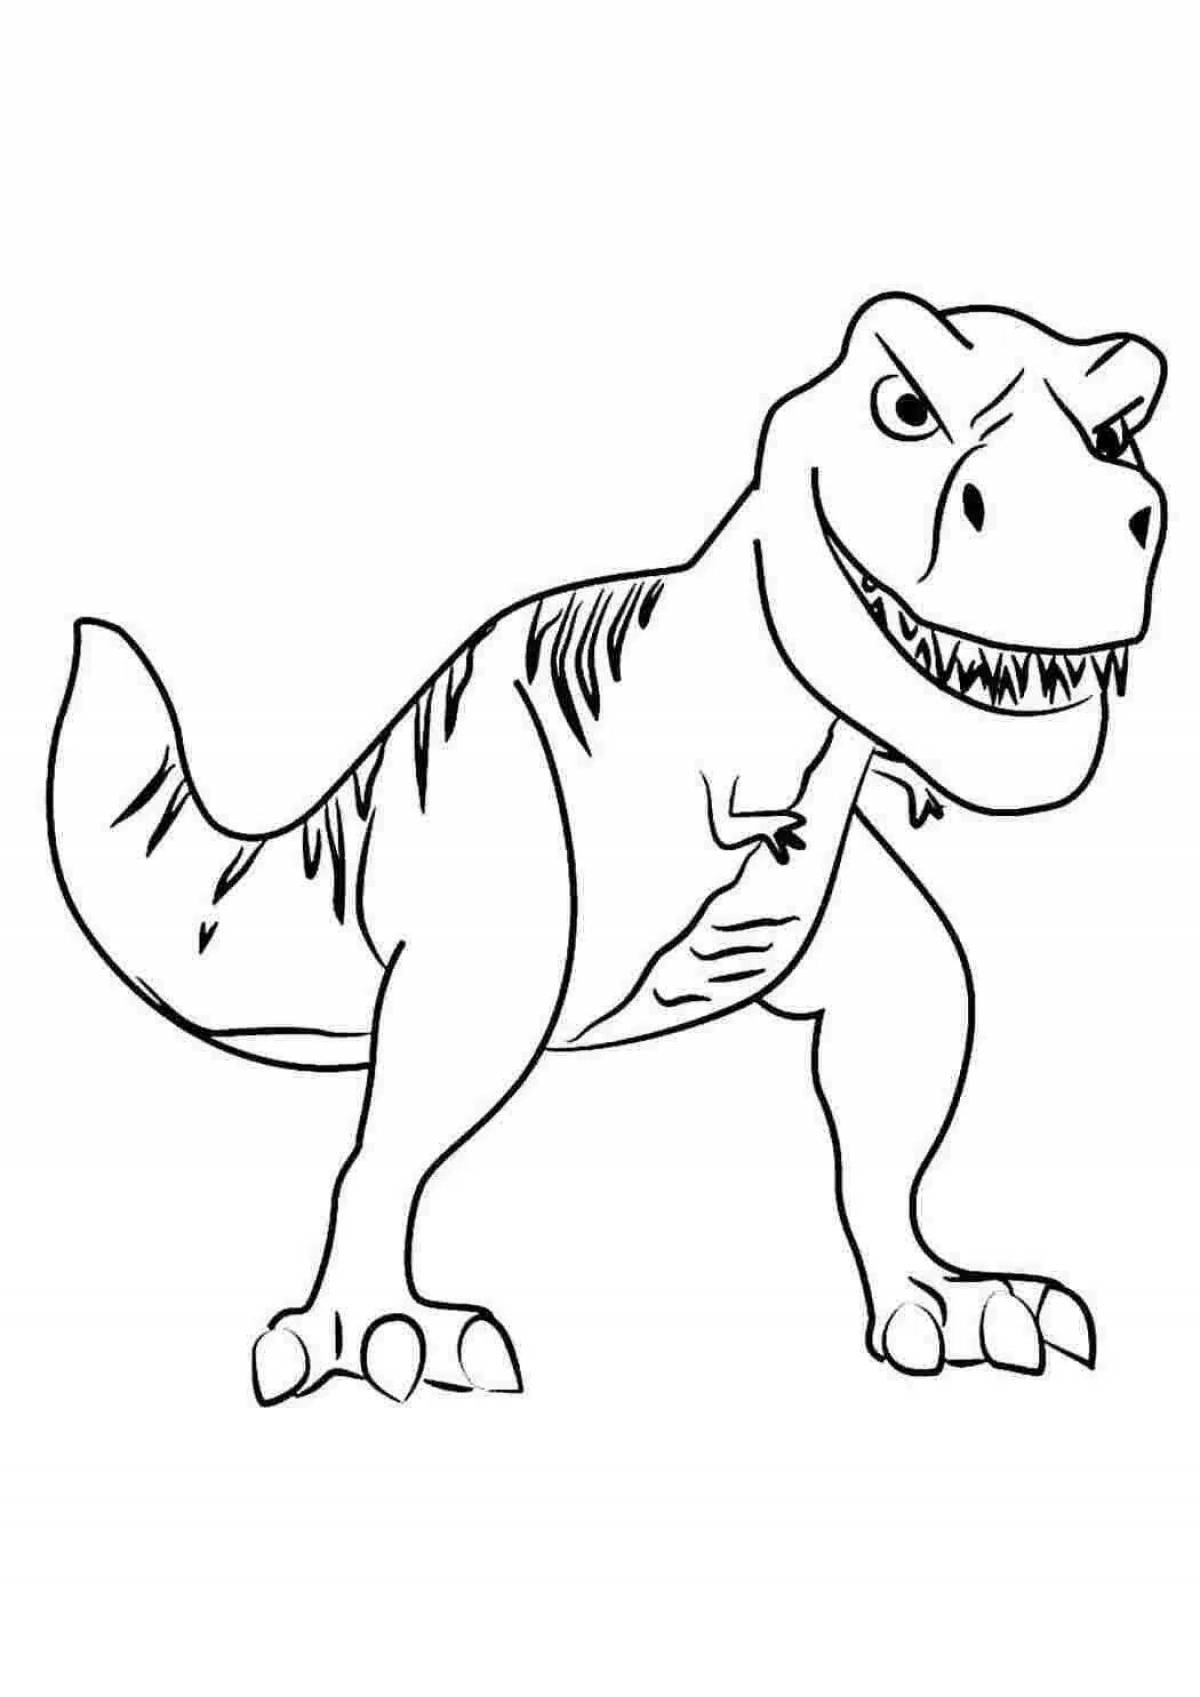 Сказочная раскраска тираннозавра для детей